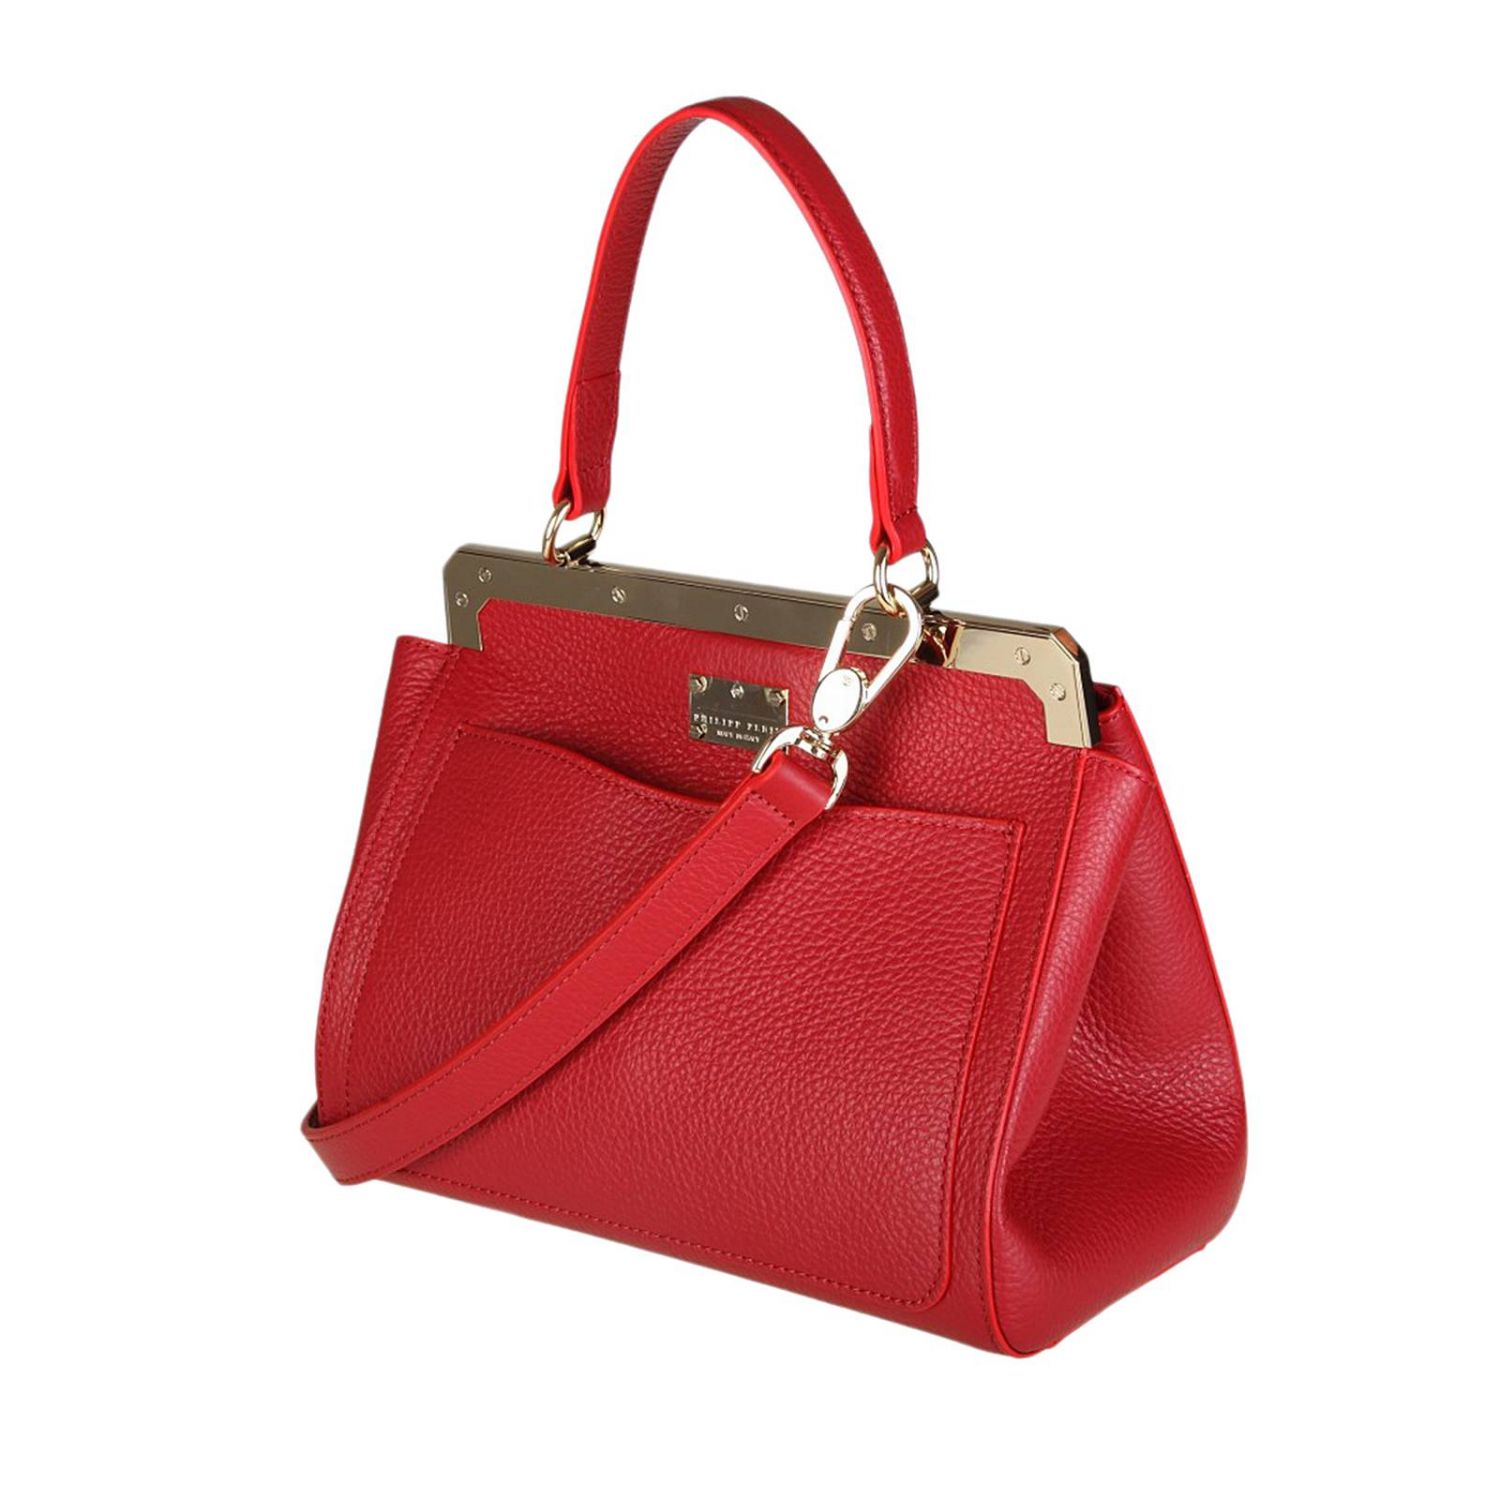 Shoulder bag women Philipp Plein | Handbag Philipp Plein Women Red ...